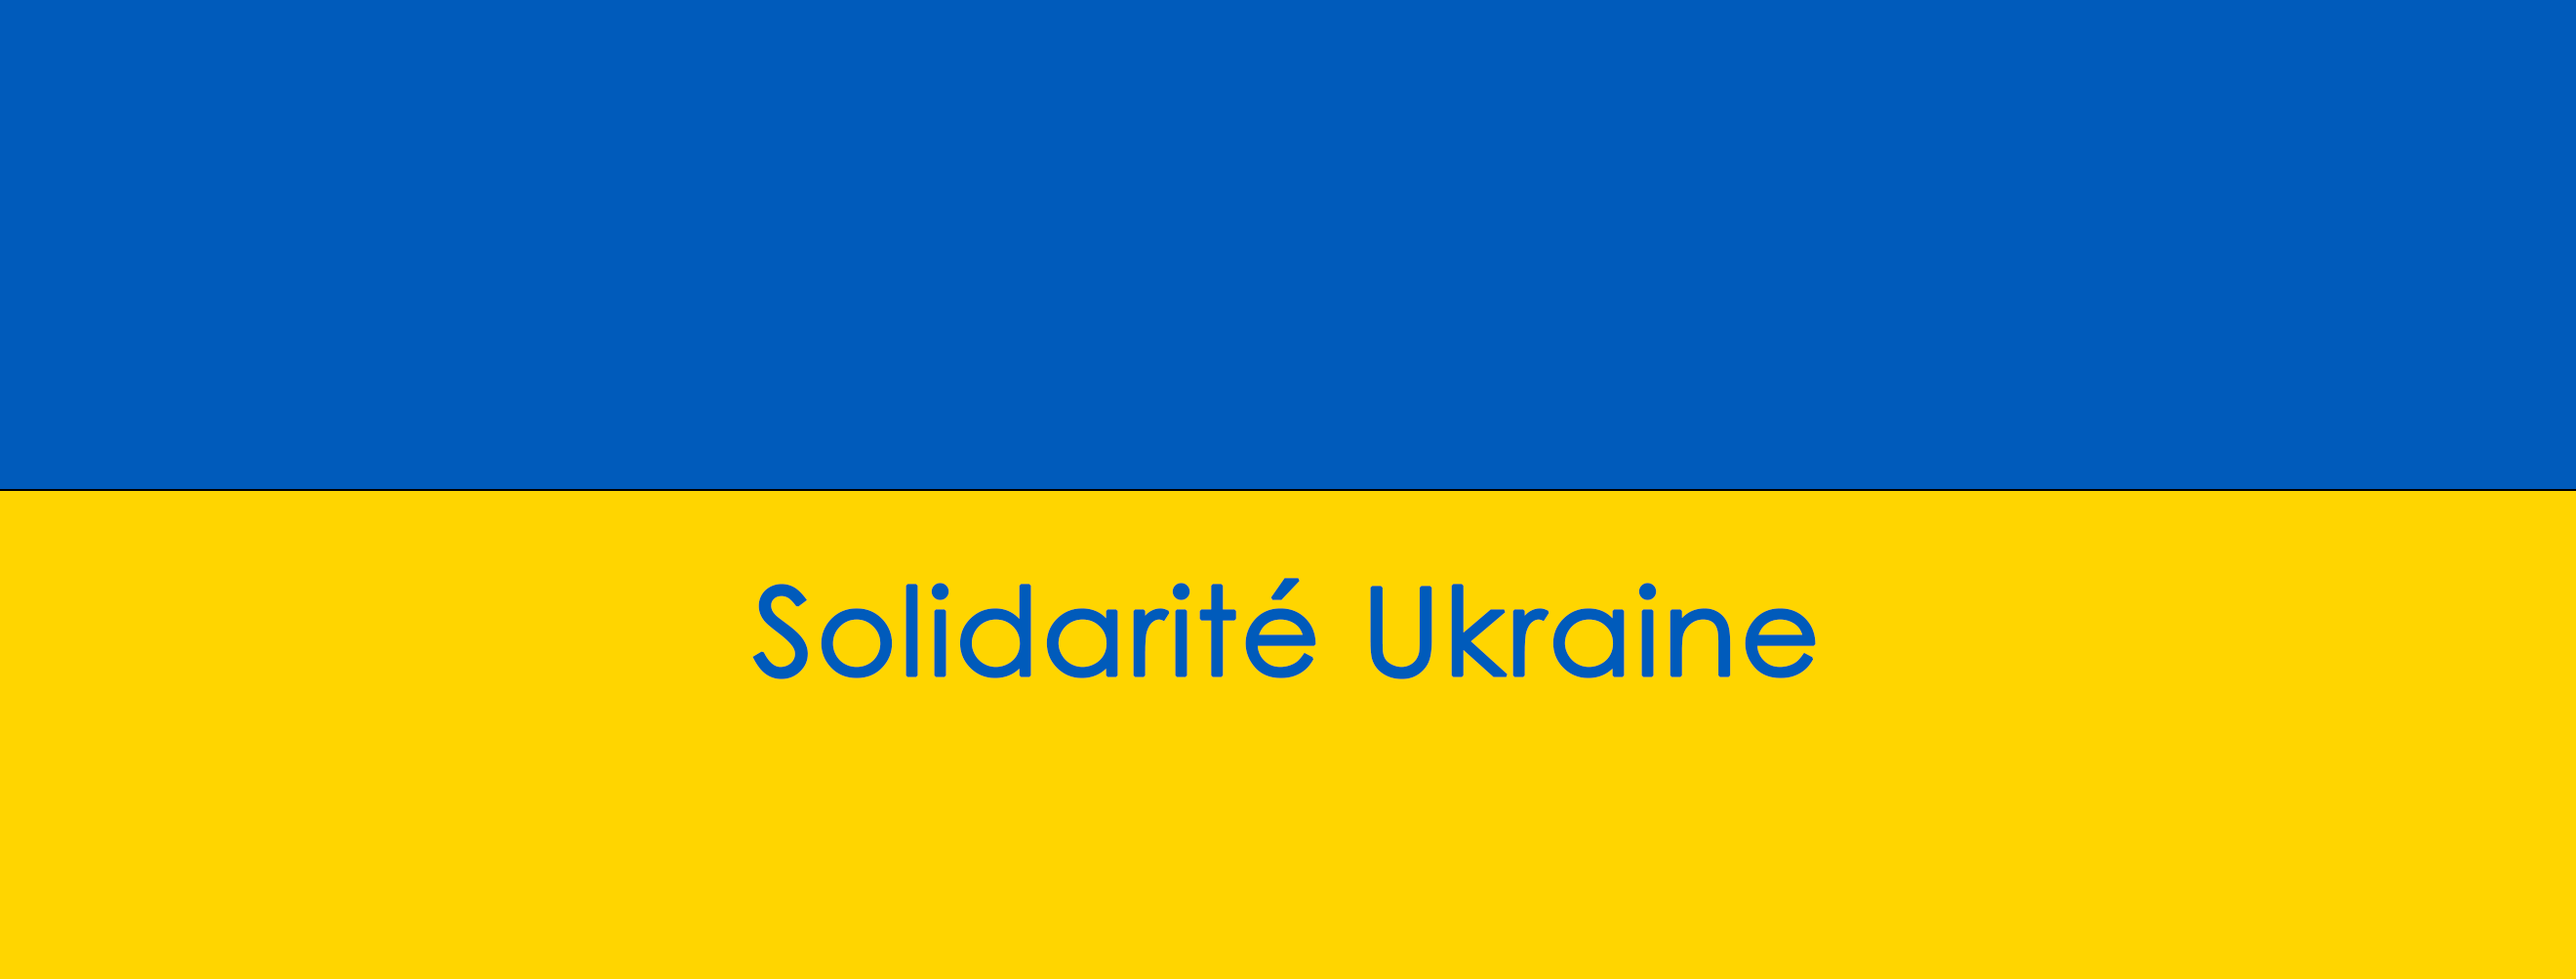 Image de couverture - Soutien à l'Ukraine